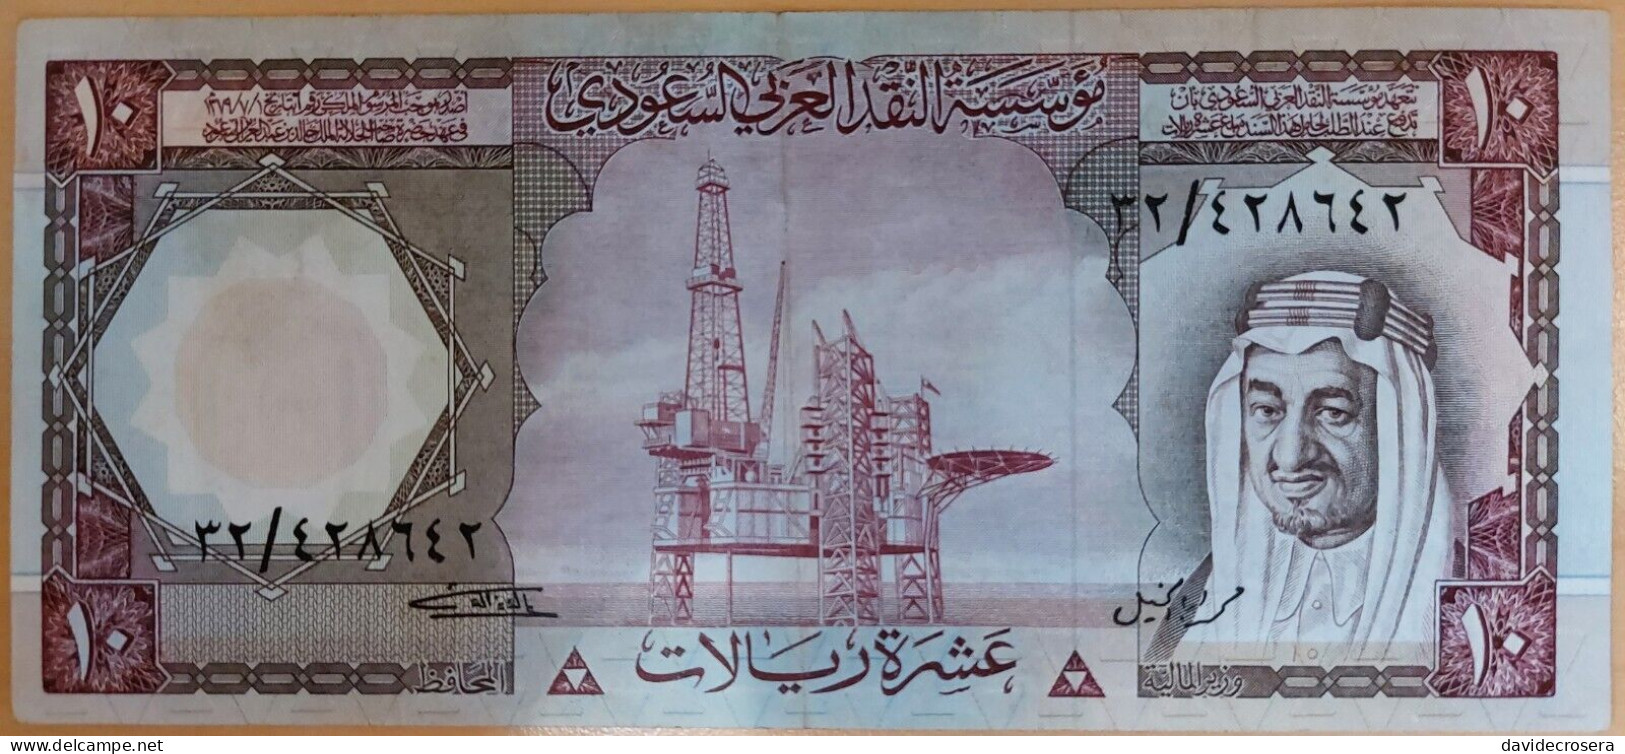 SAUDI ARABIA 10 RIYALS 1977 PICK 18 - Saudi Arabia